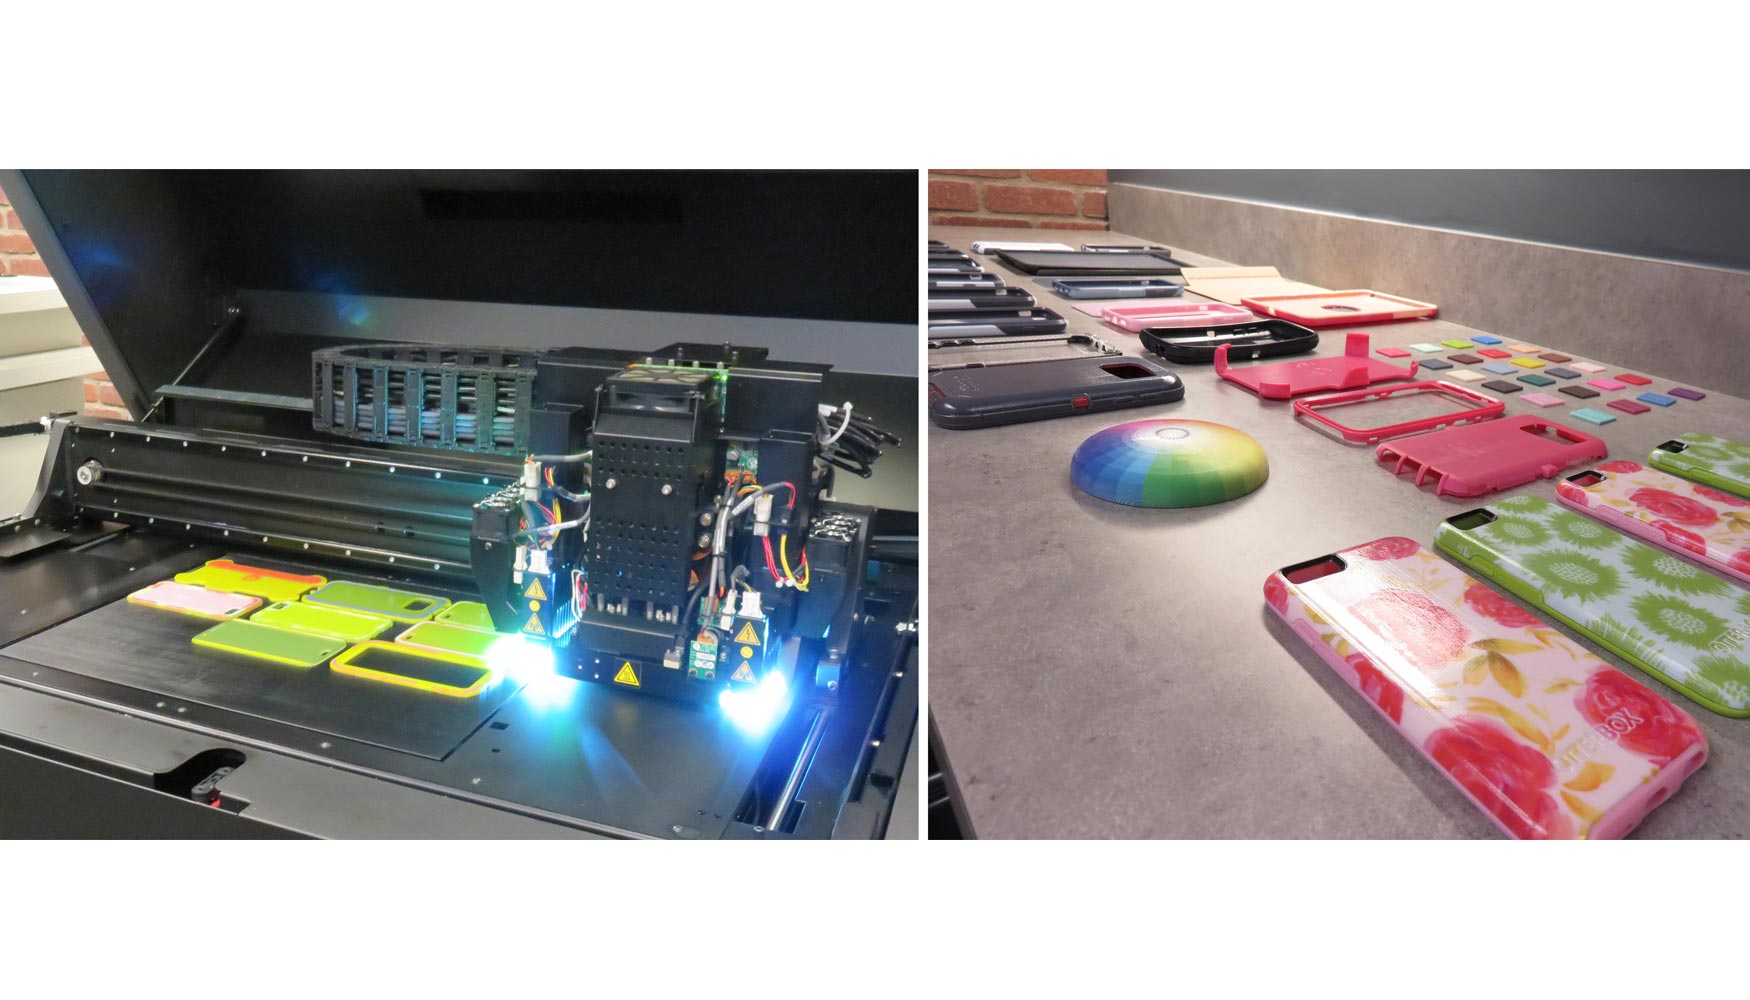 OtterBox utiliza la nueva Stratasys J750 para la produccin de carcasas de mviles con texturas variadas y combinaciones de colores...